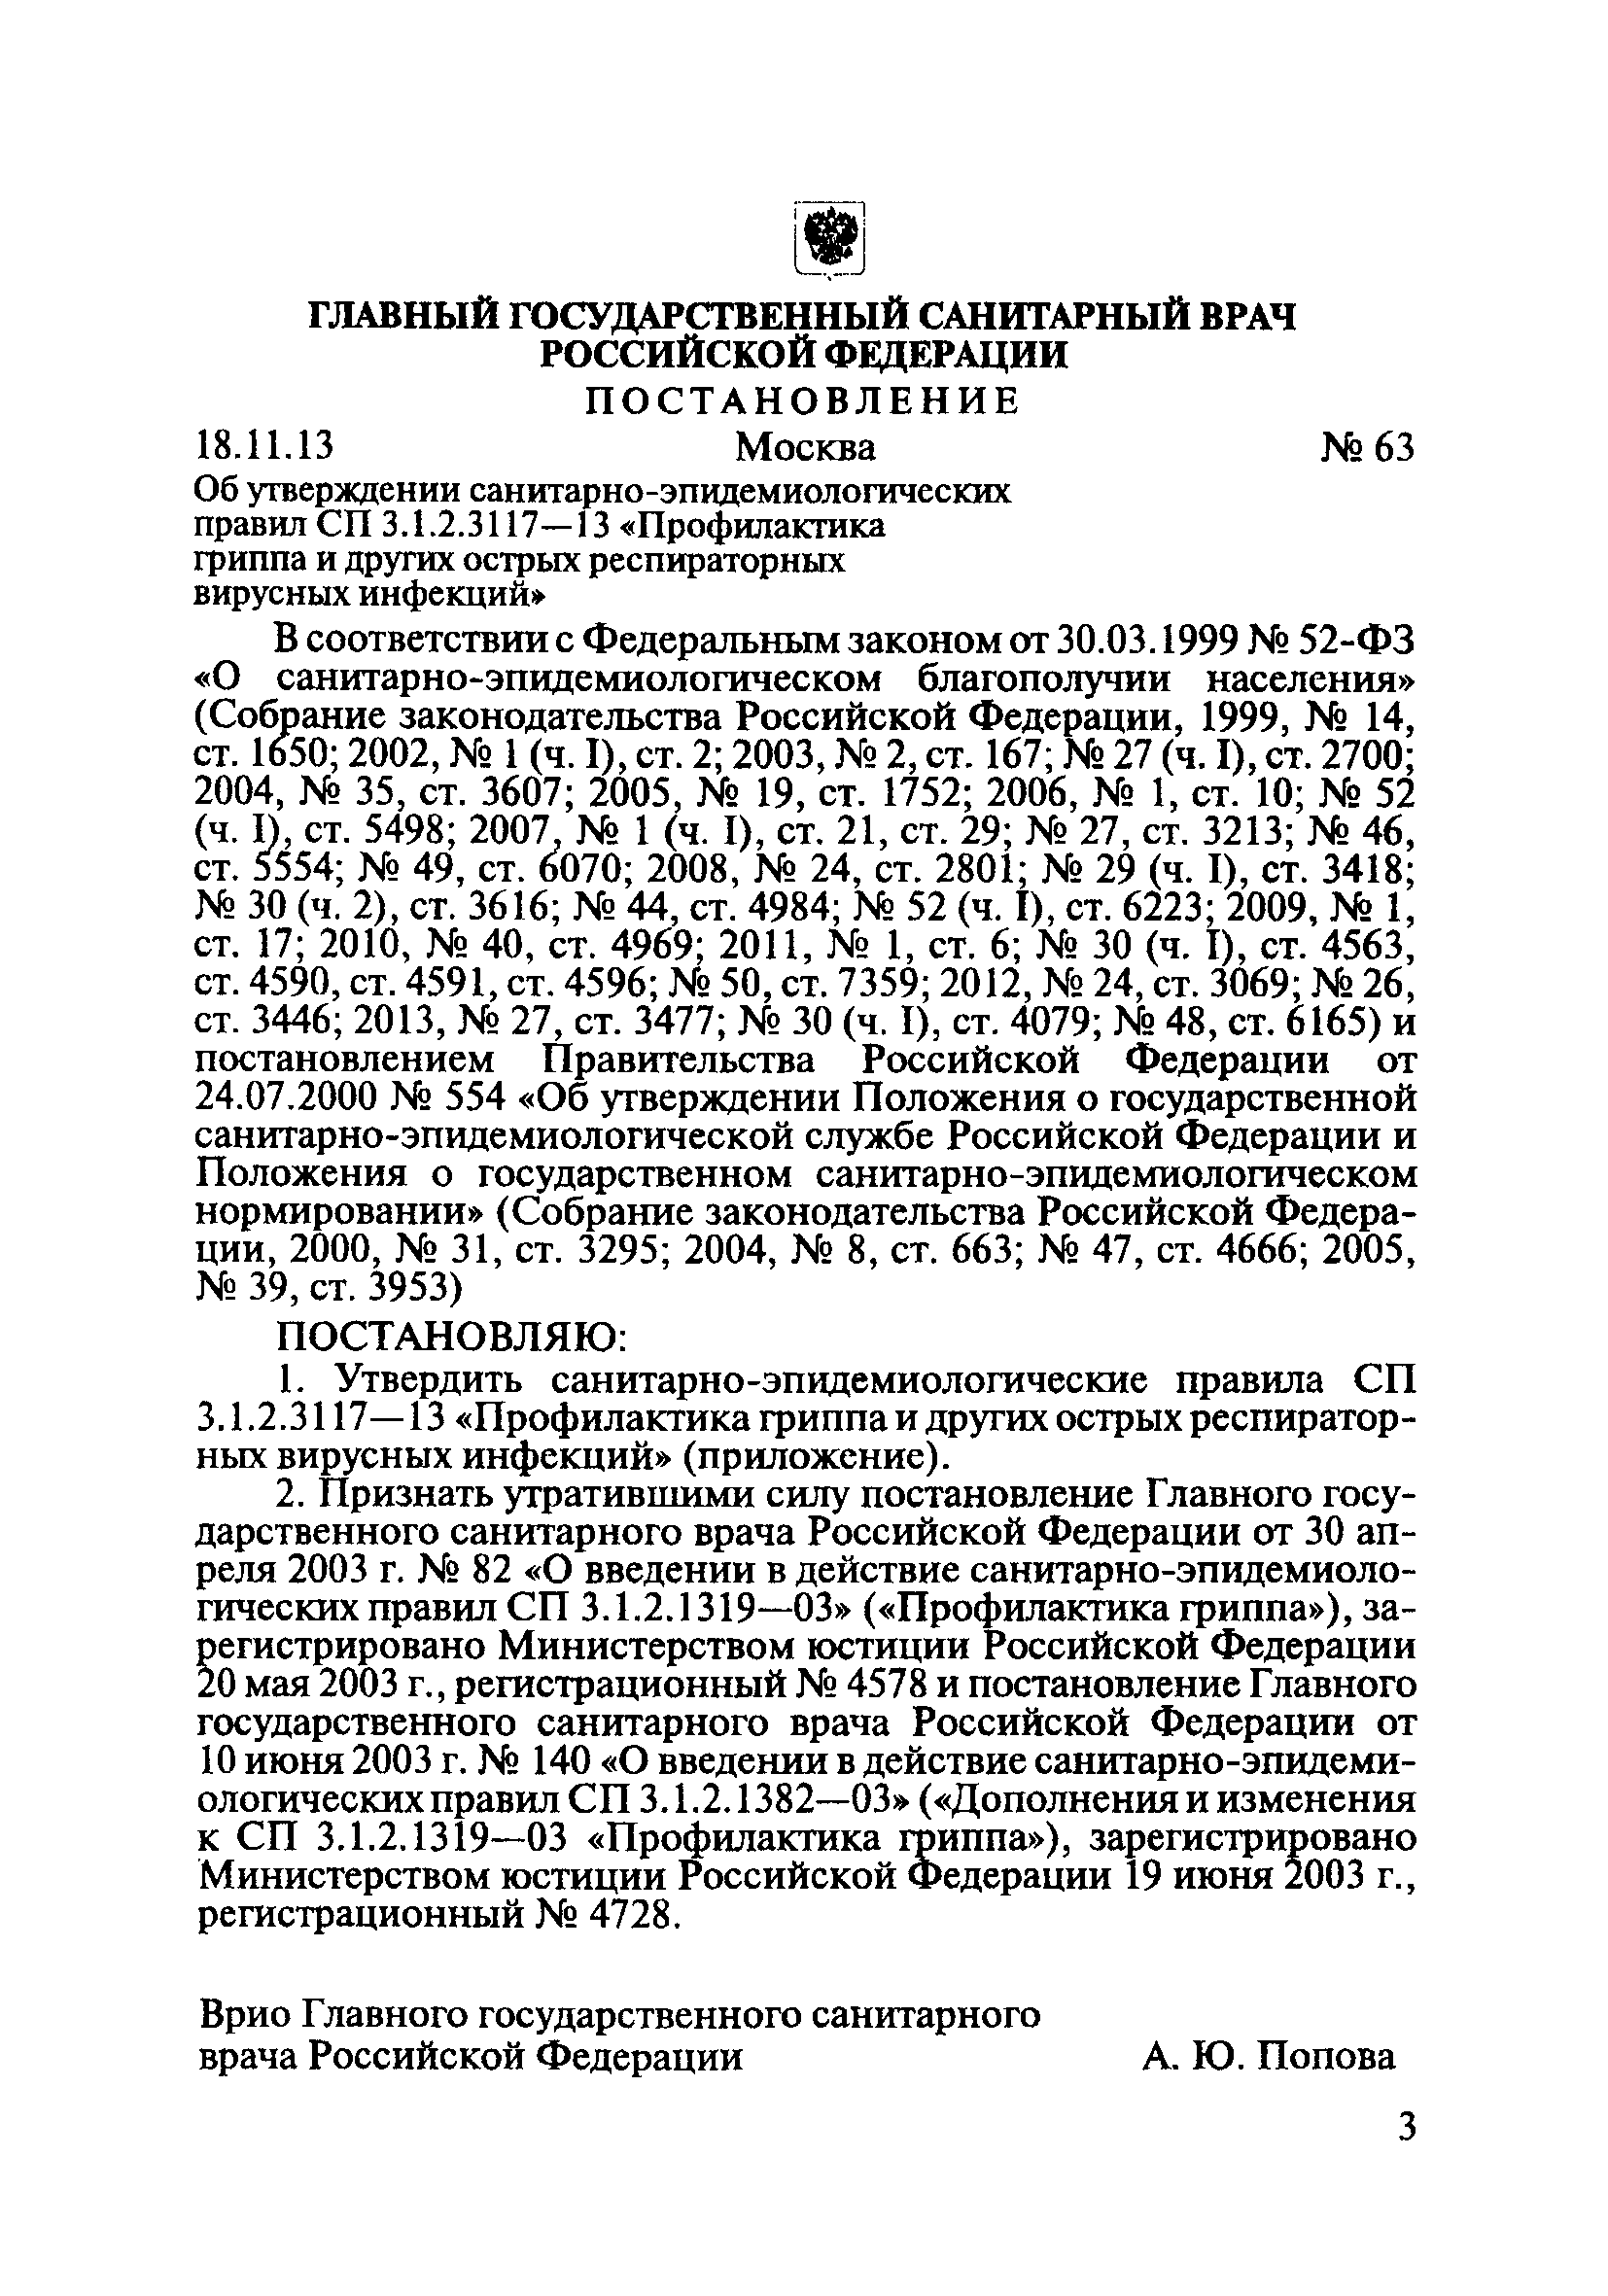 СП 3.1.2.3117-13